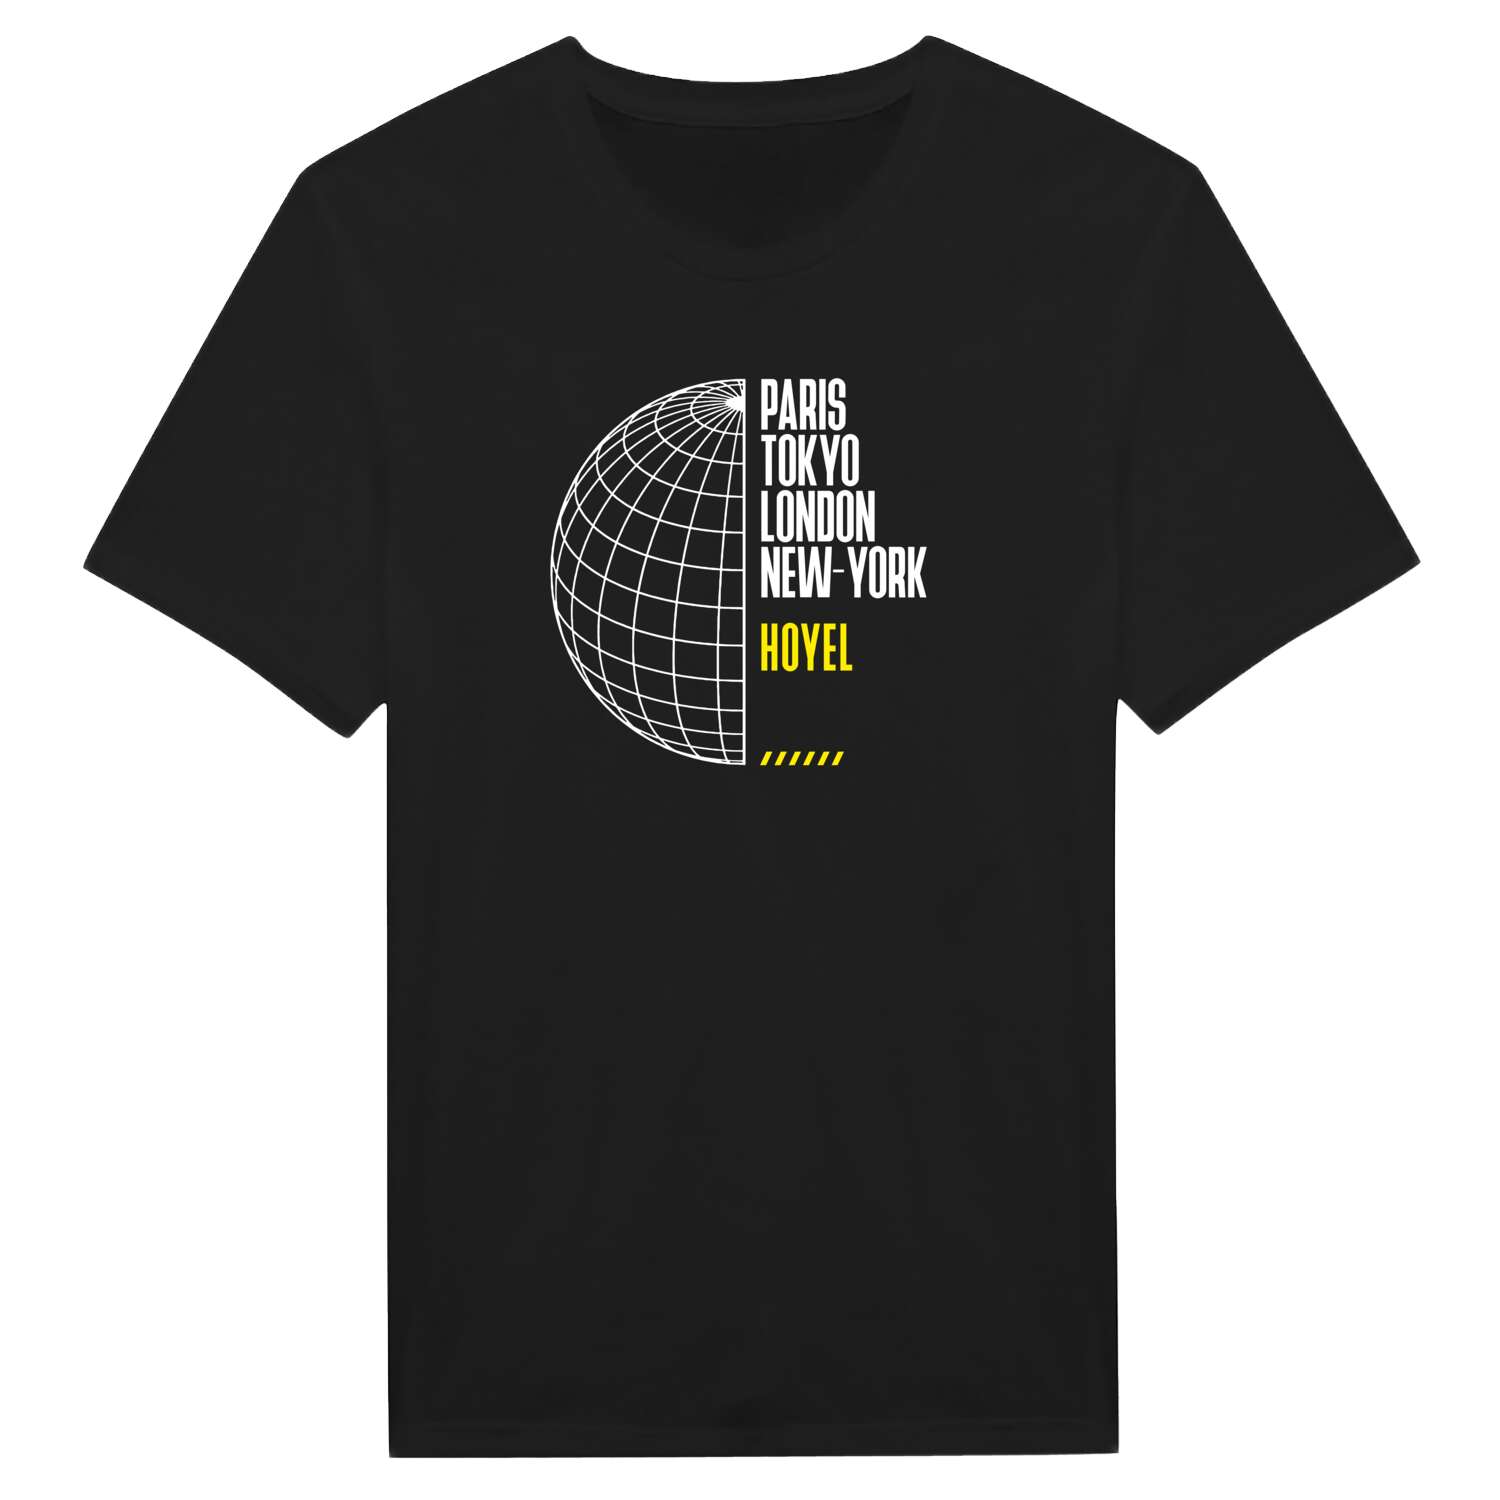 Hoyel T-Shirt »Paris Tokyo London«